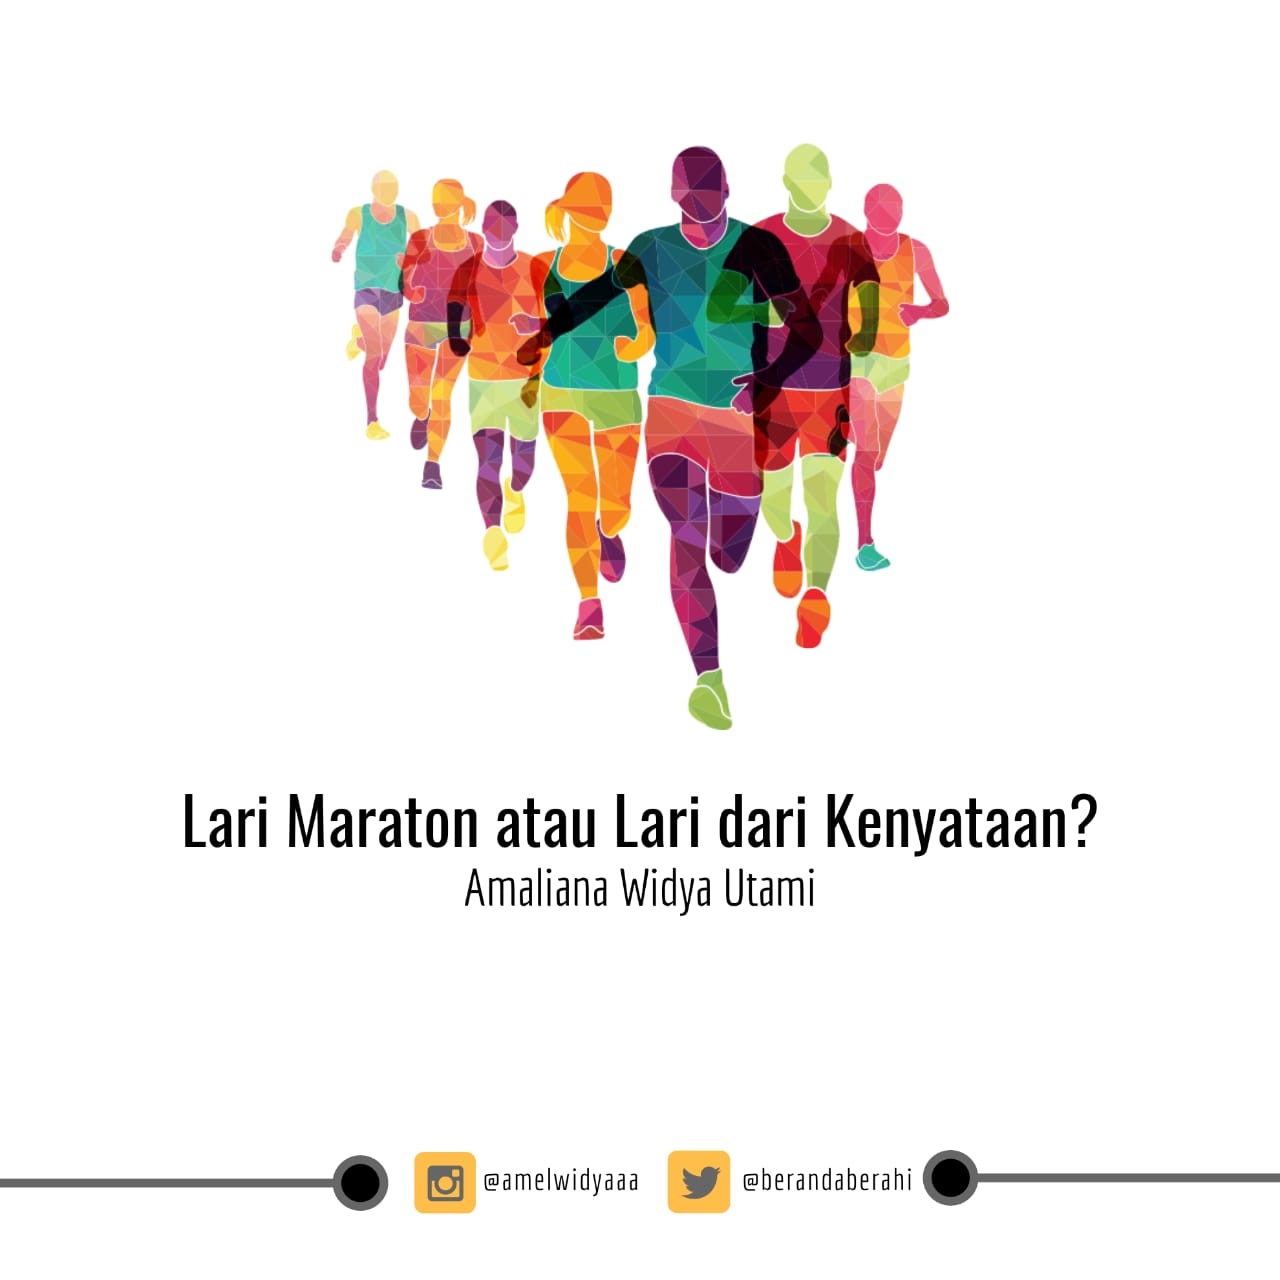 Lari Maraton Atau Lari Dari Kenyataan Halaman All Kompasianacom